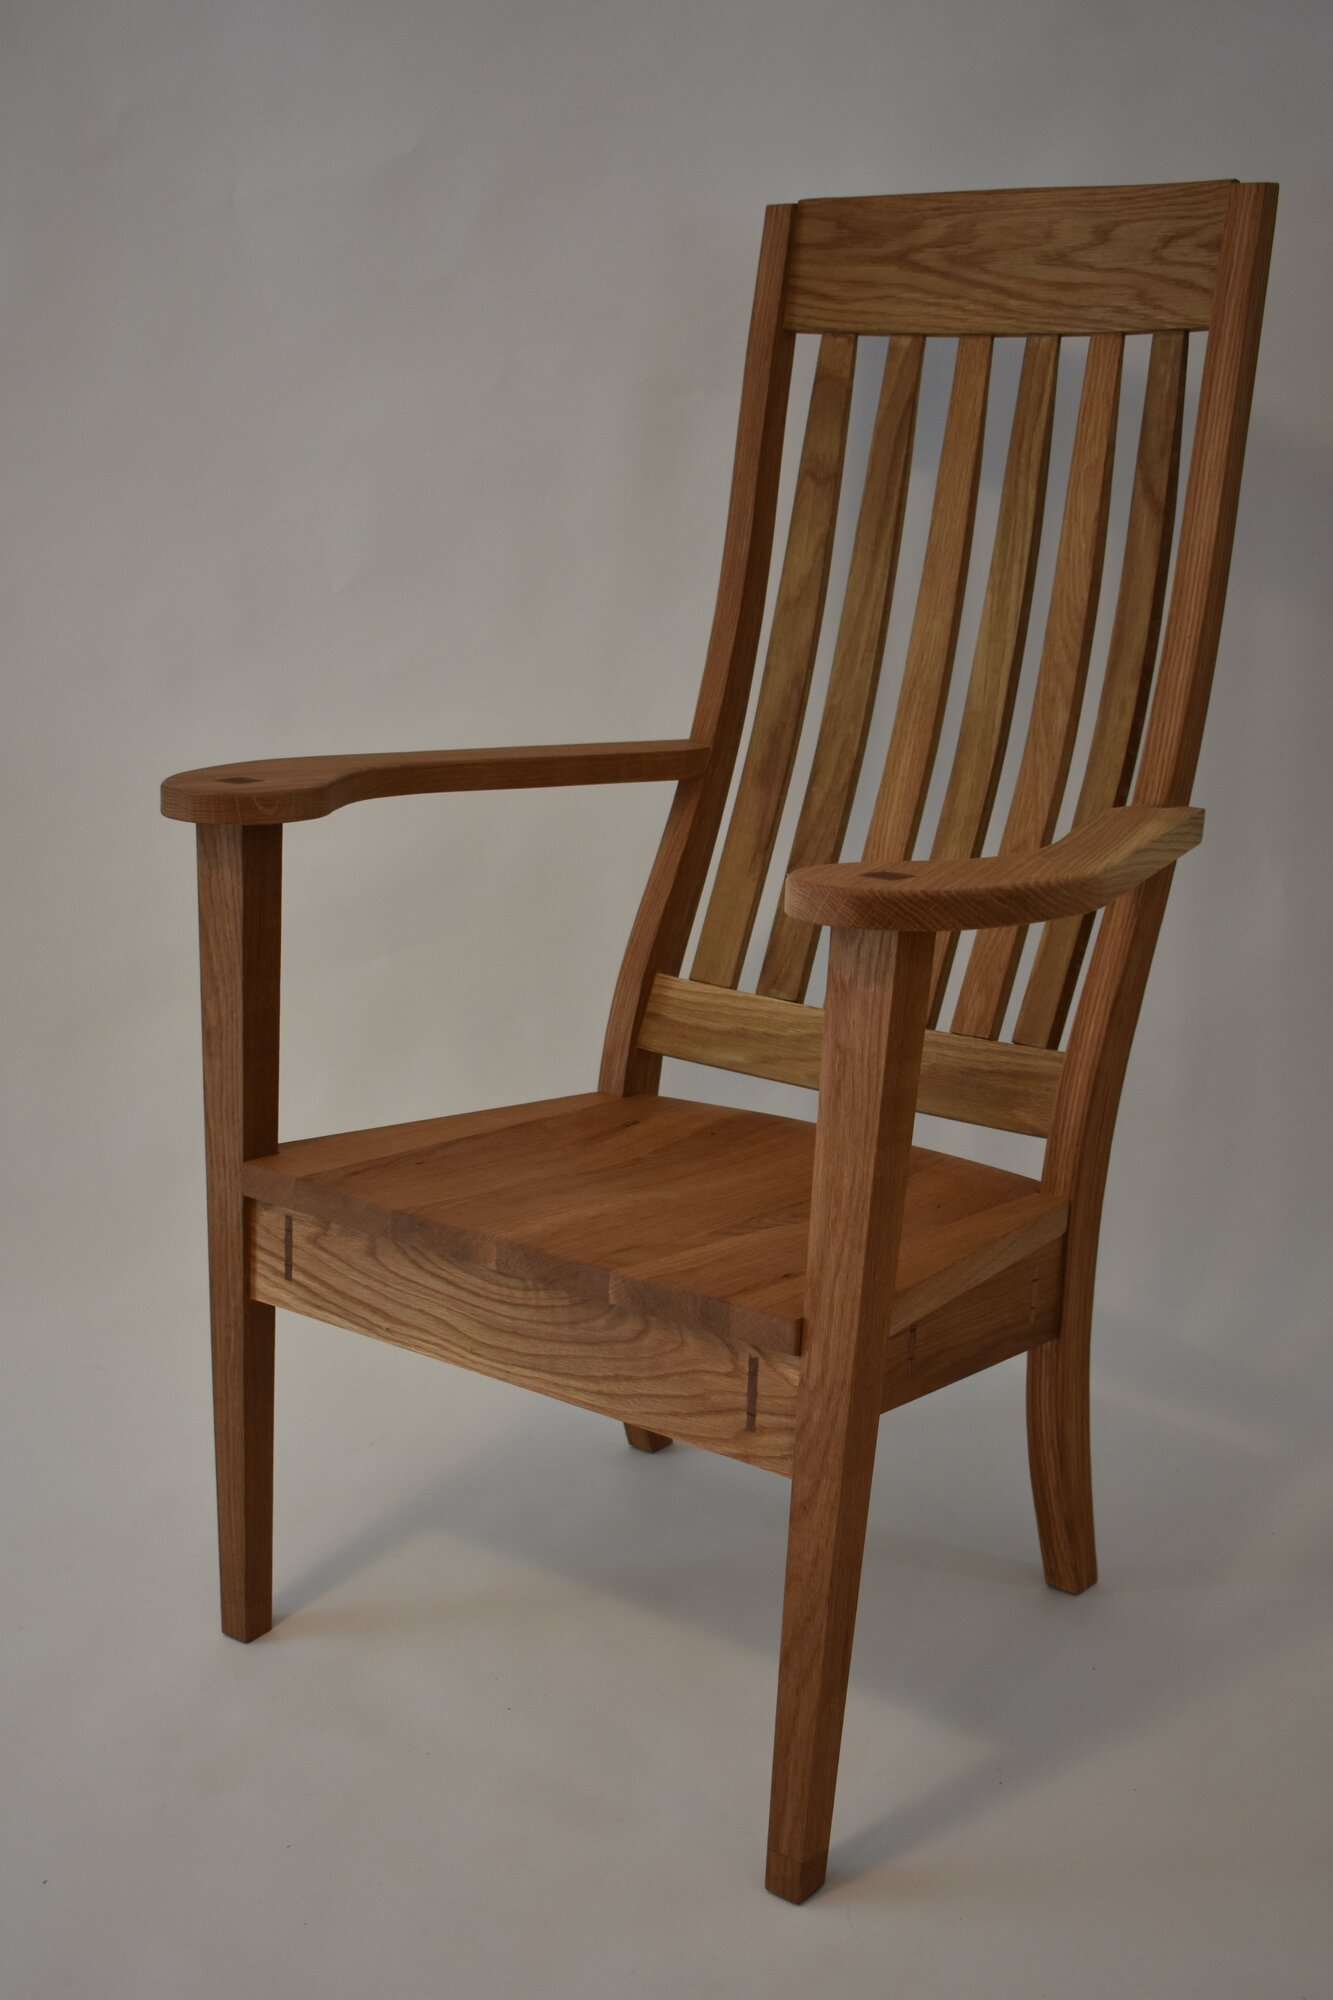 Meegan's Chair